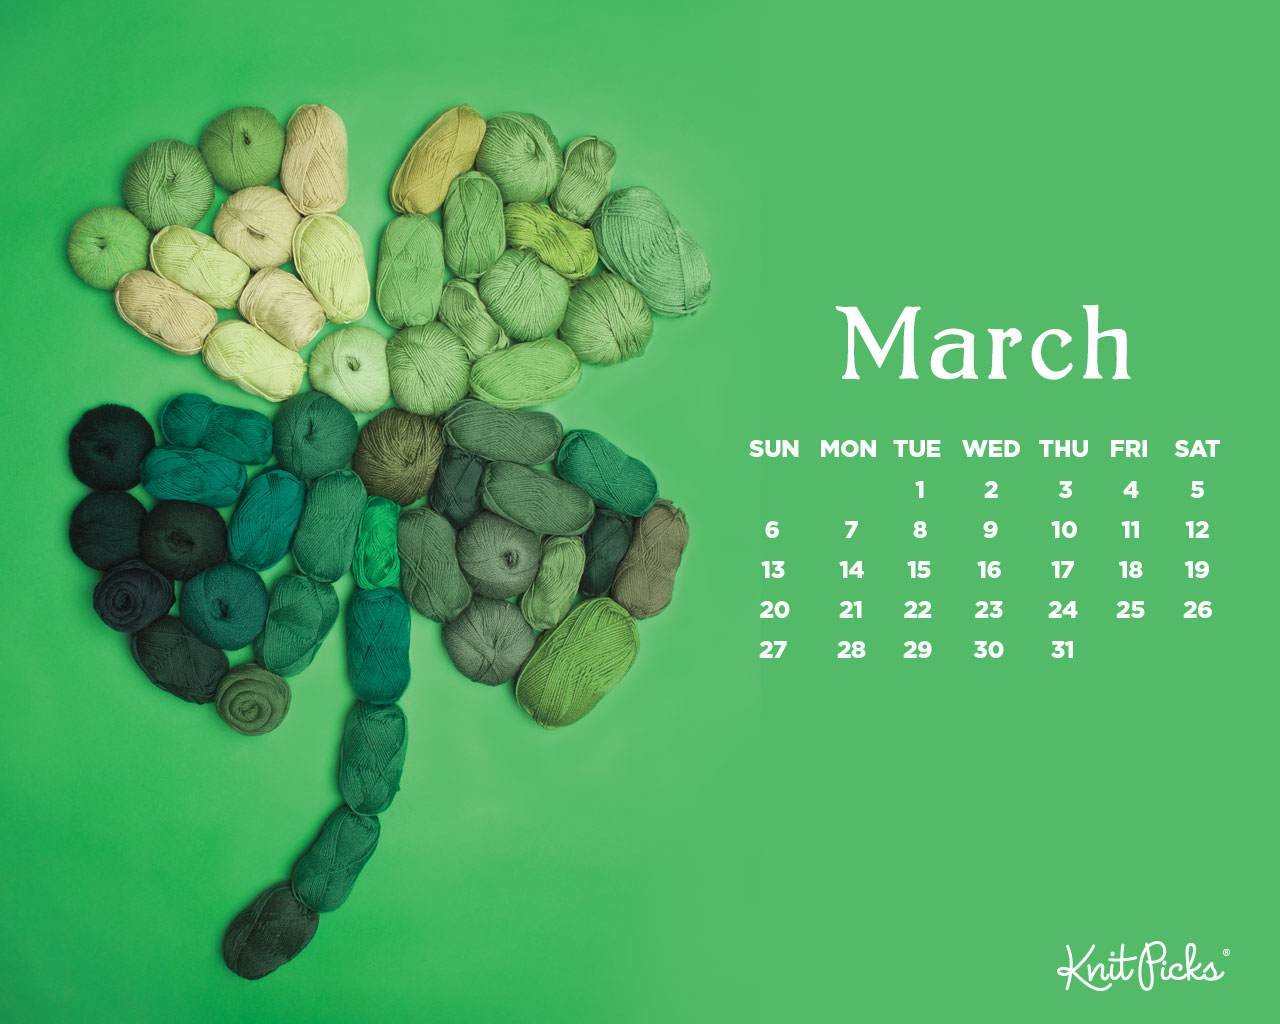 Lịch tháng 3 năm 2016: Biết rõ thời gian, đẳng cấp được nâng cao. Với chiếc lịch tháng 3 năm 2016, bạn sẽ biết được những sự kiện quan trọng diễn ra trong tháng này. Bạn sẽ không chỉ thuận tiện trong việc plan cho công việc mà còn thăng hoa về mặt tư duy.